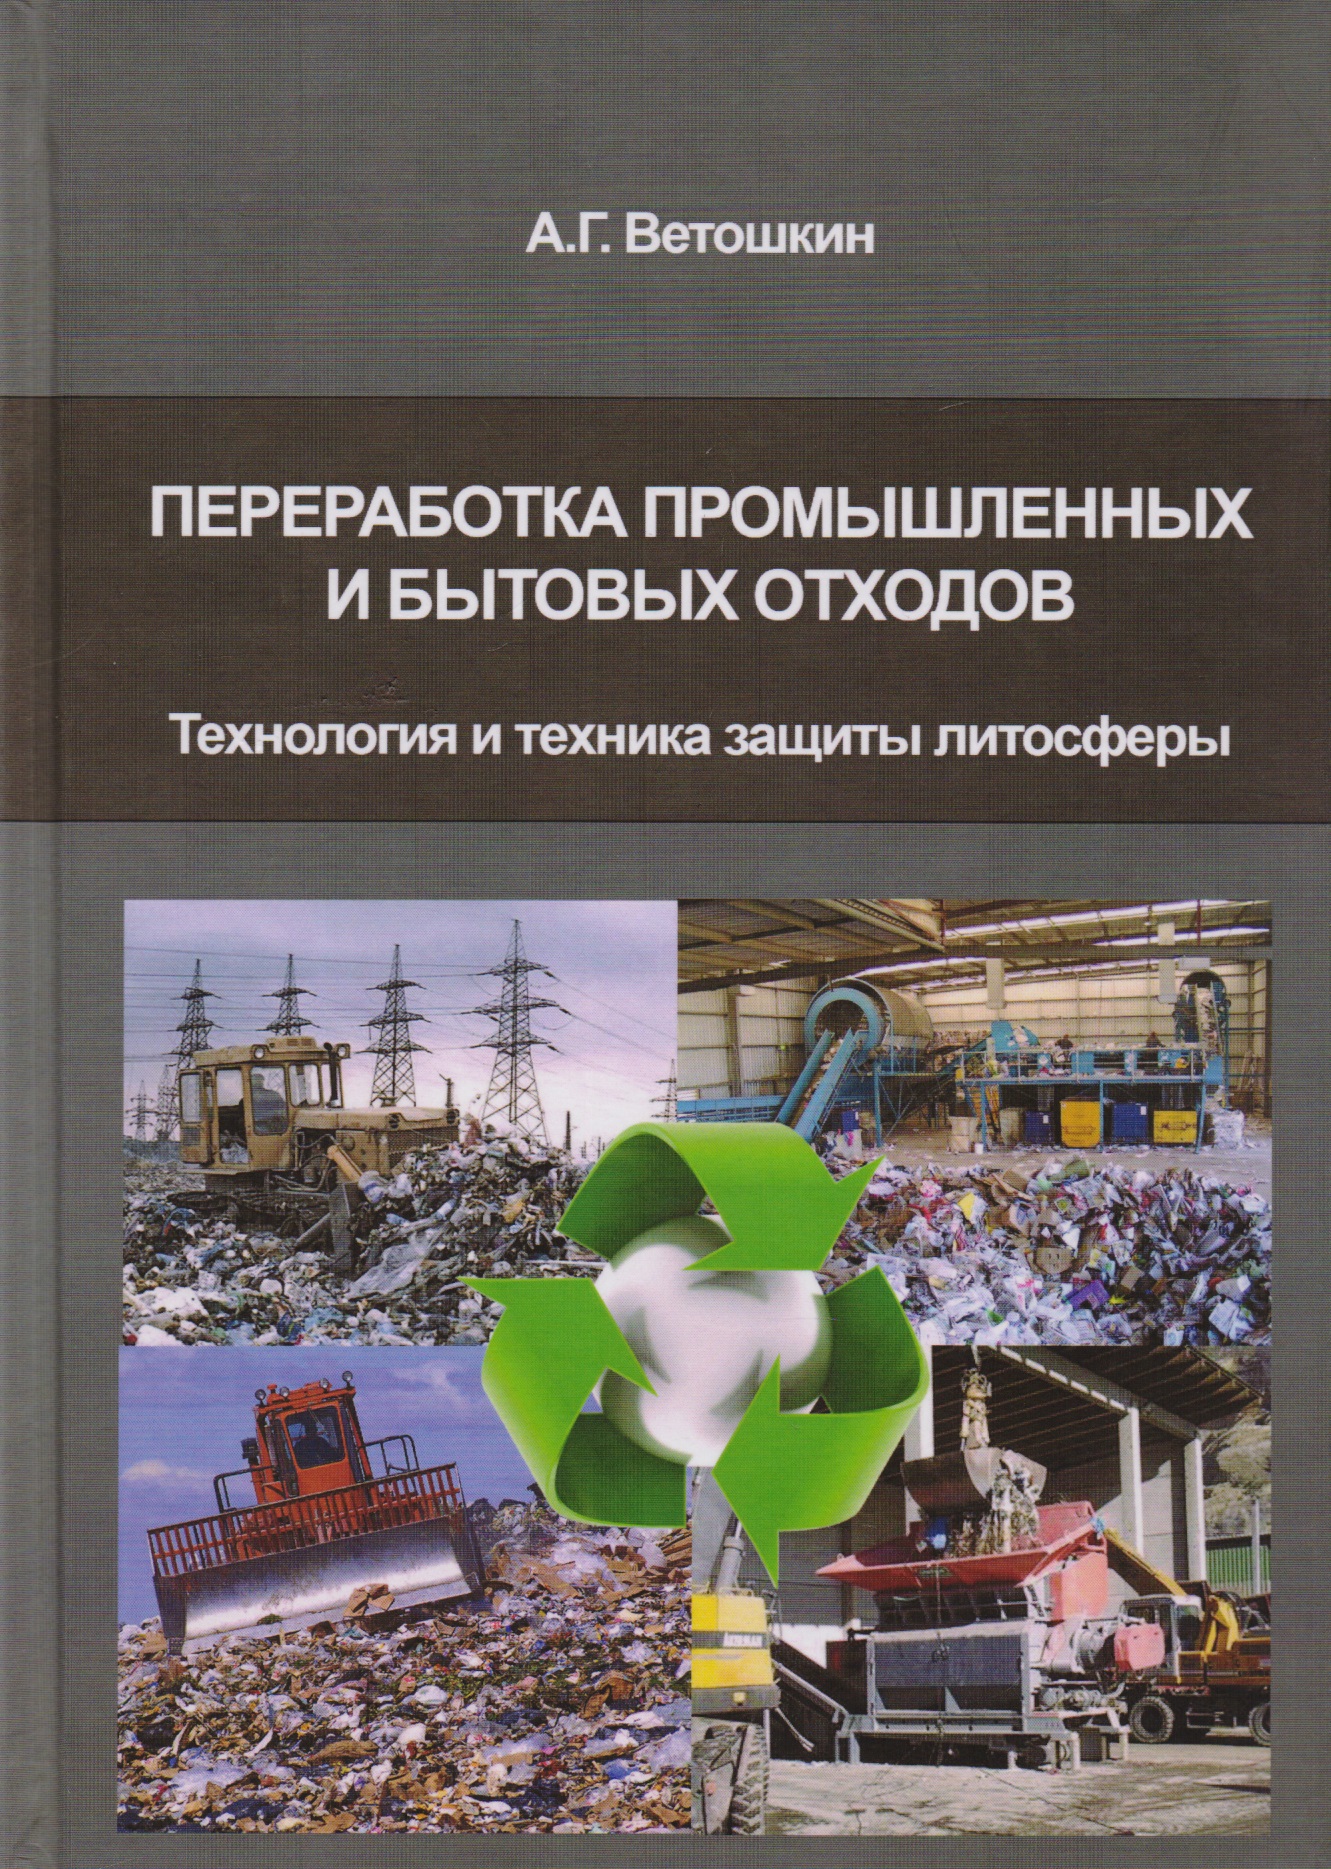 Ветошкин Александр Григорьевич Переработка промышленных и бытовых отходов (технология и техника защиты литосферы)